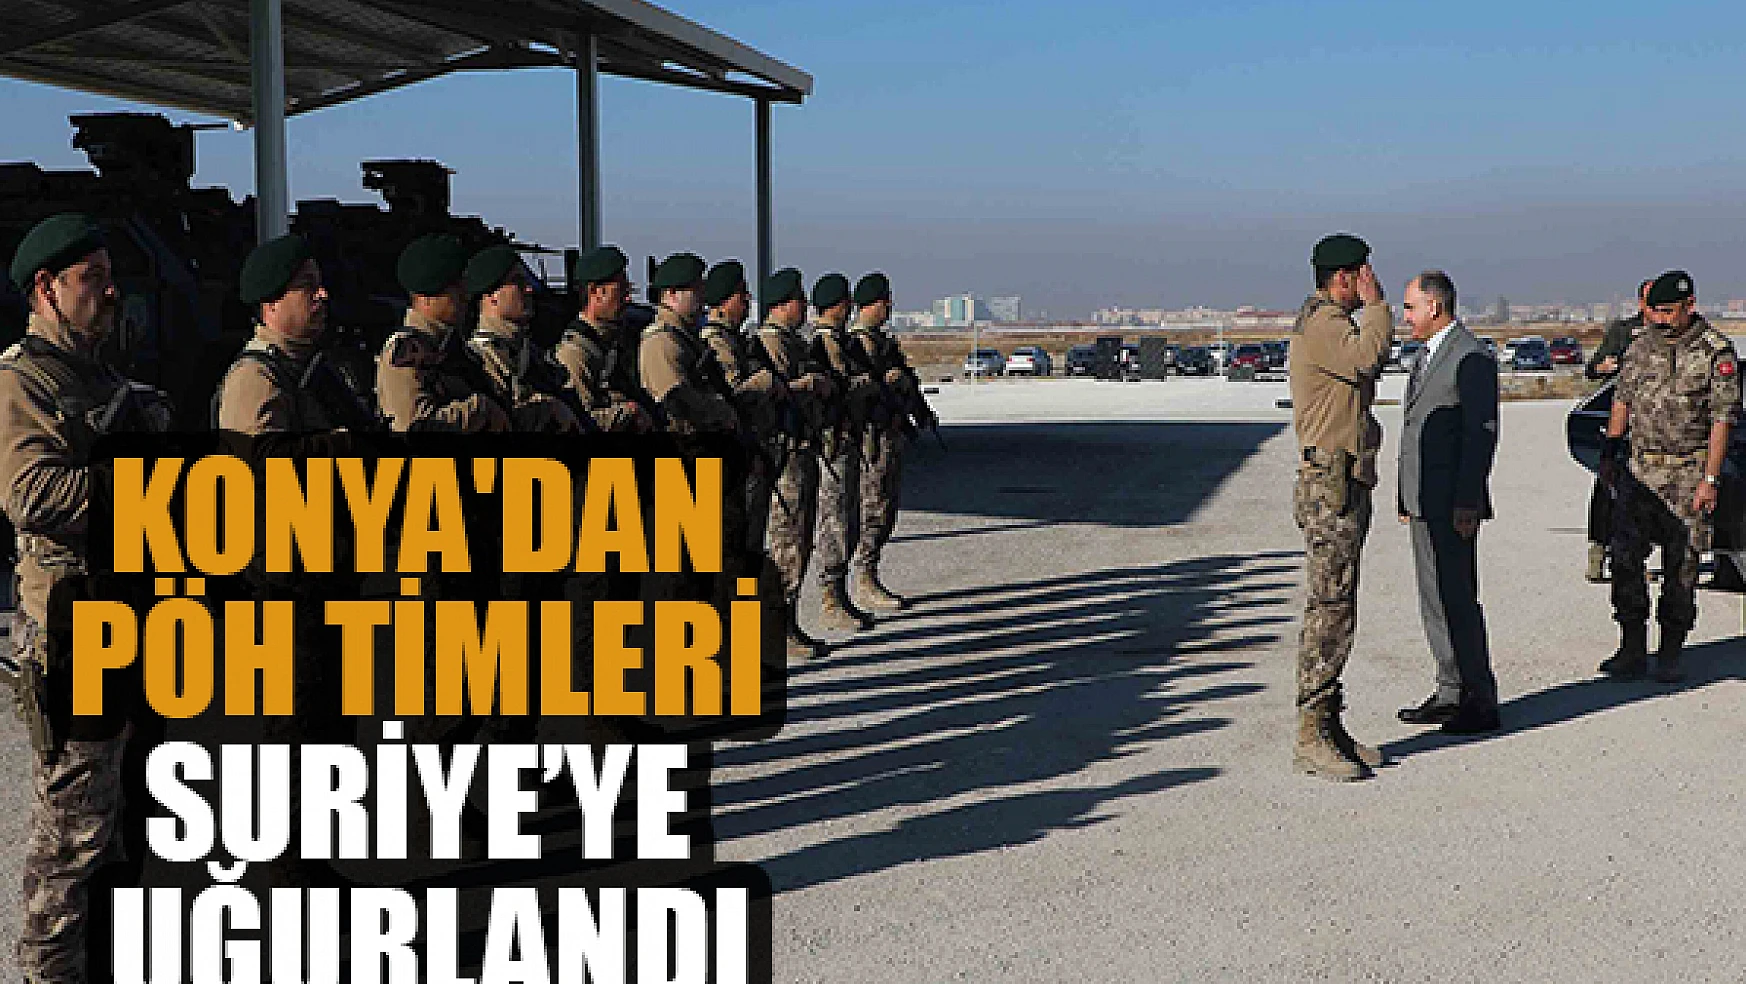 Konya'dan PÖH timleri dualarla Suriye'ye uğurlandı